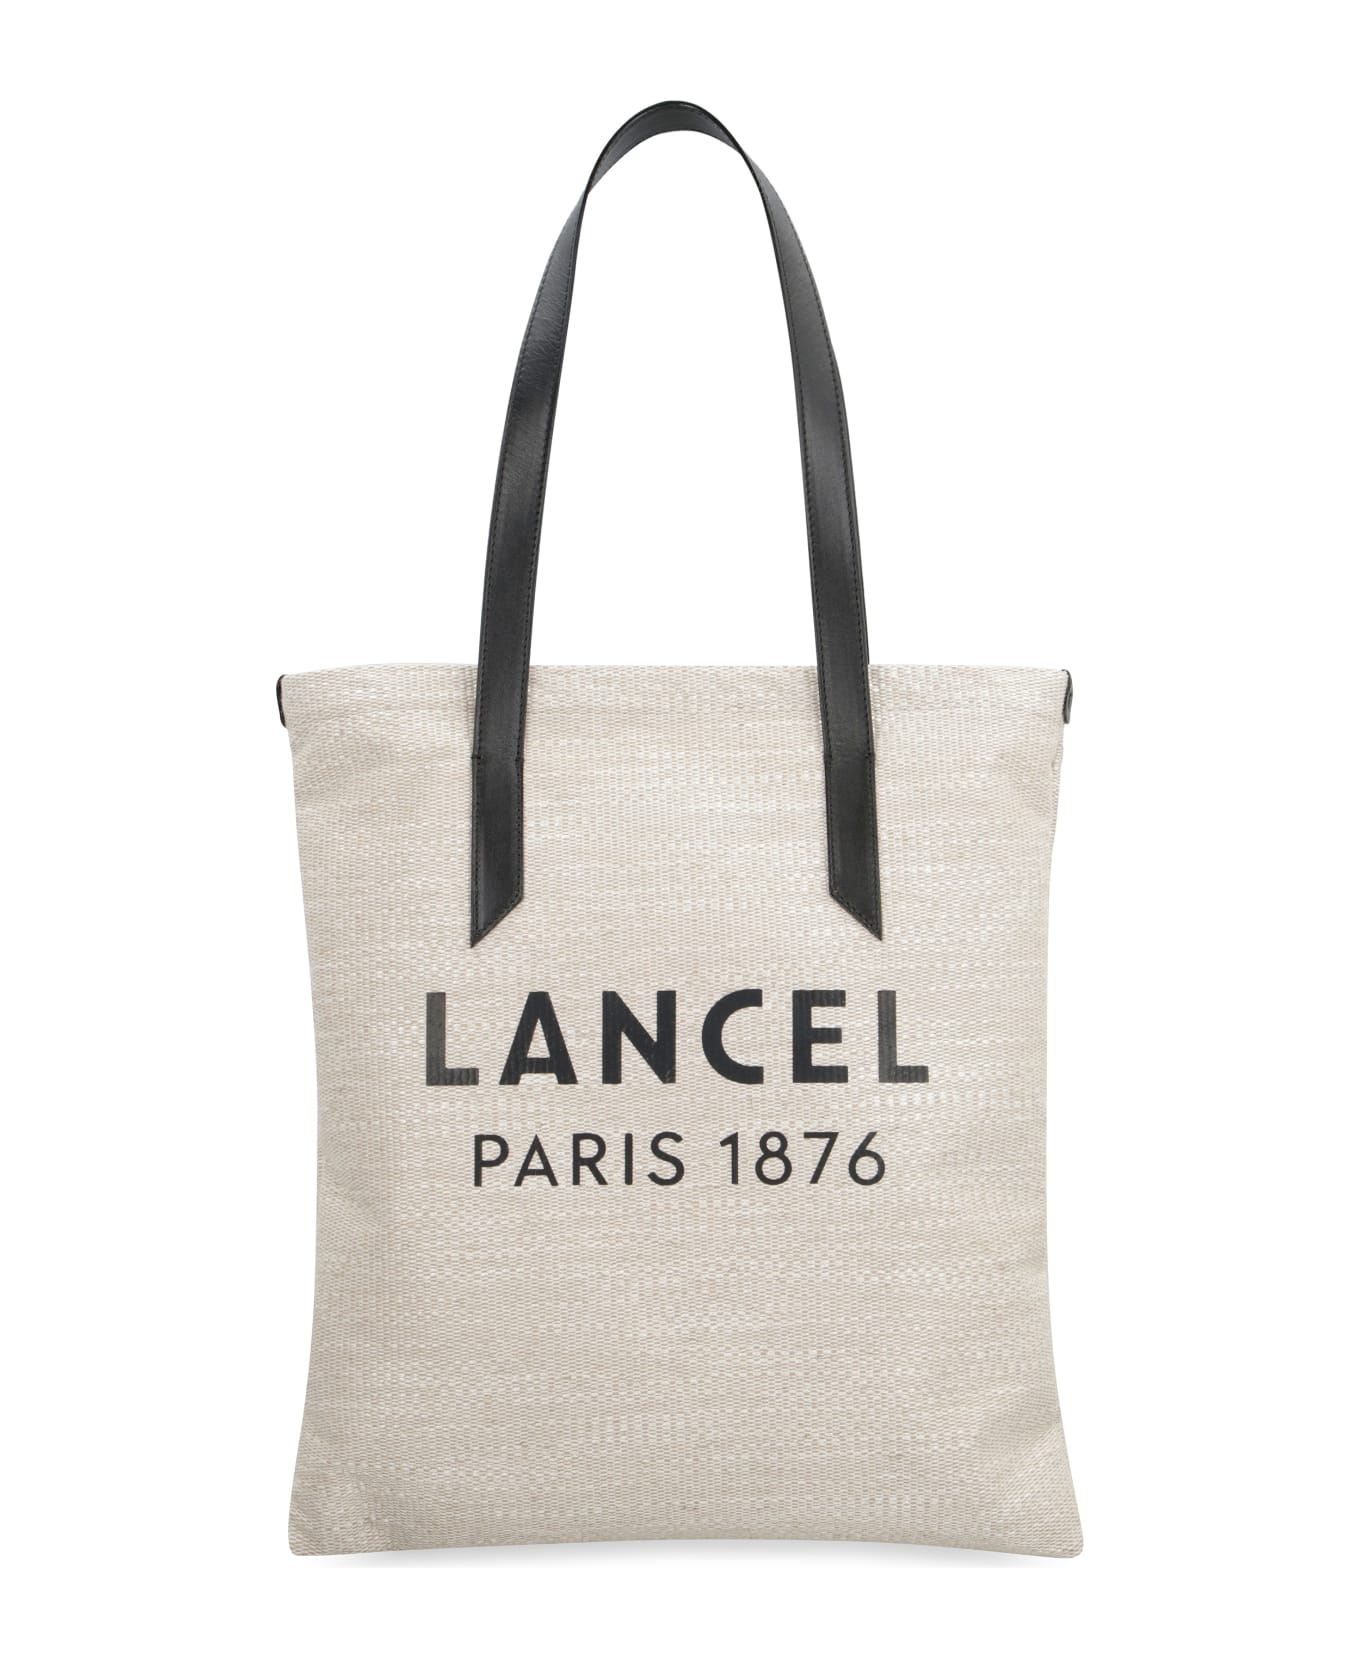 Lancel Summer Tote Bag - Beige